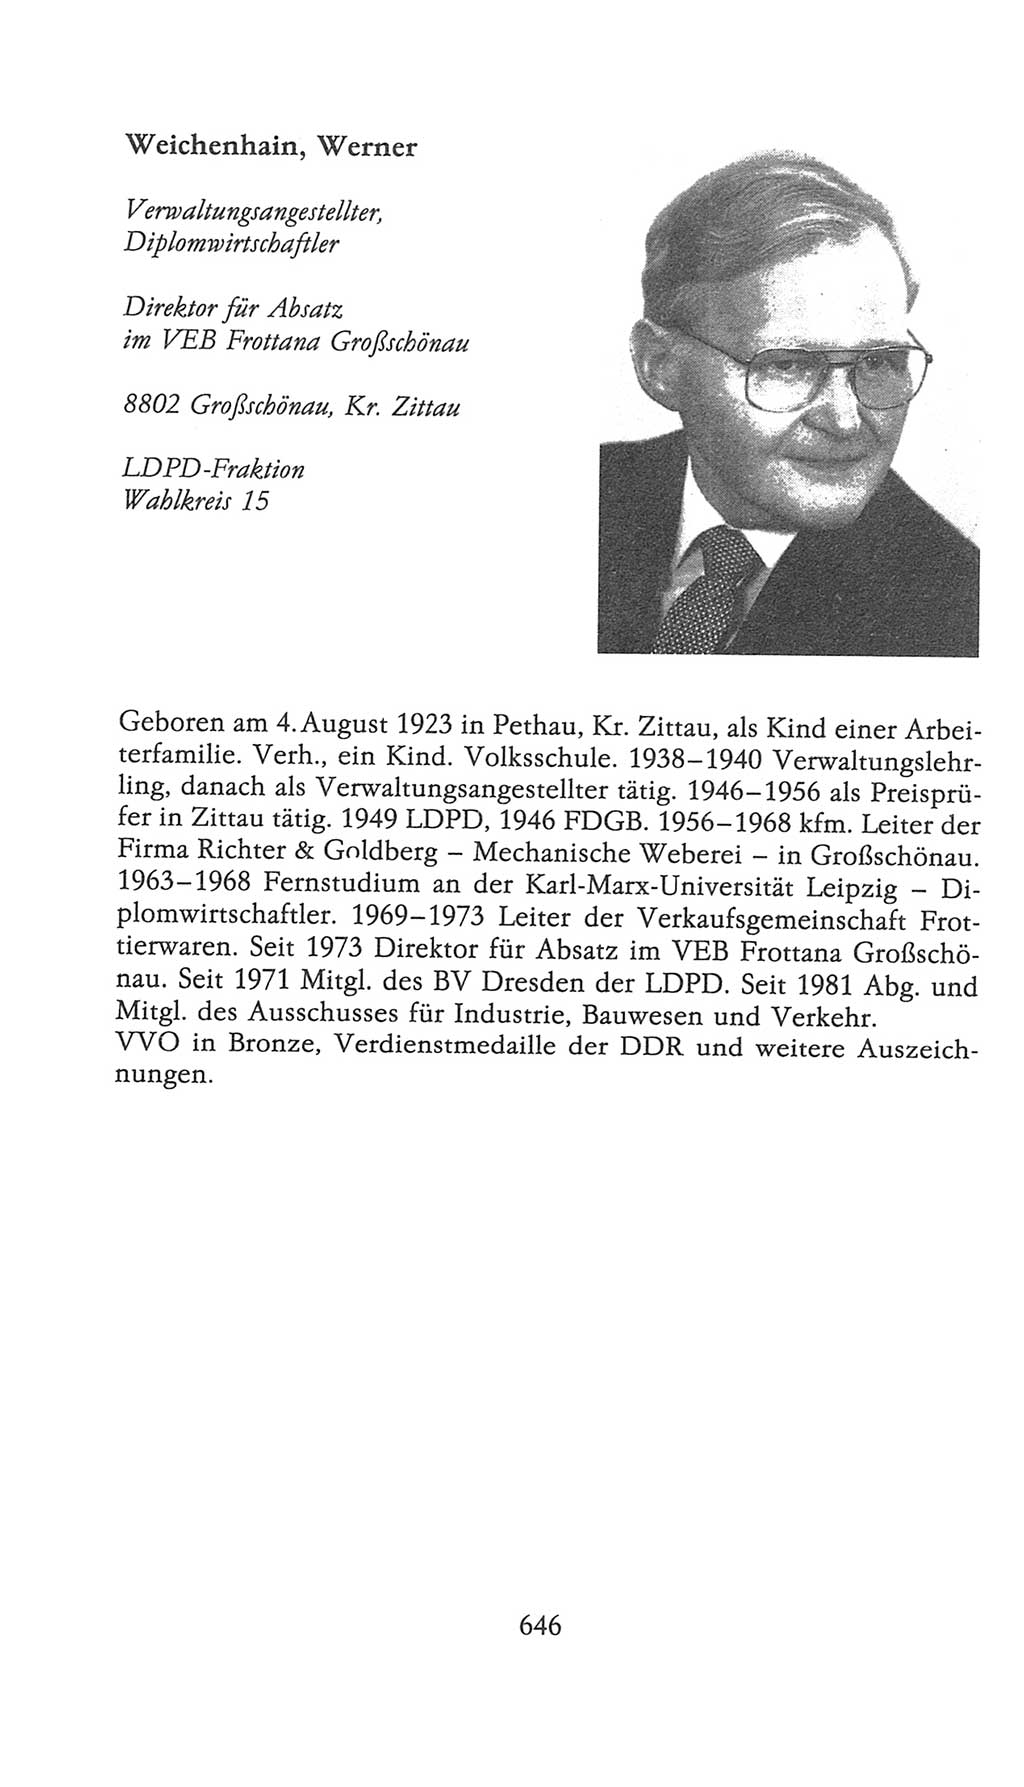 Volkskammer (VK) der Deutschen Demokratischen Republik (DDR), 9. Wahlperiode 1986-1990, Seite 646 (VK. DDR 9. WP. 1986-1990, S. 646)